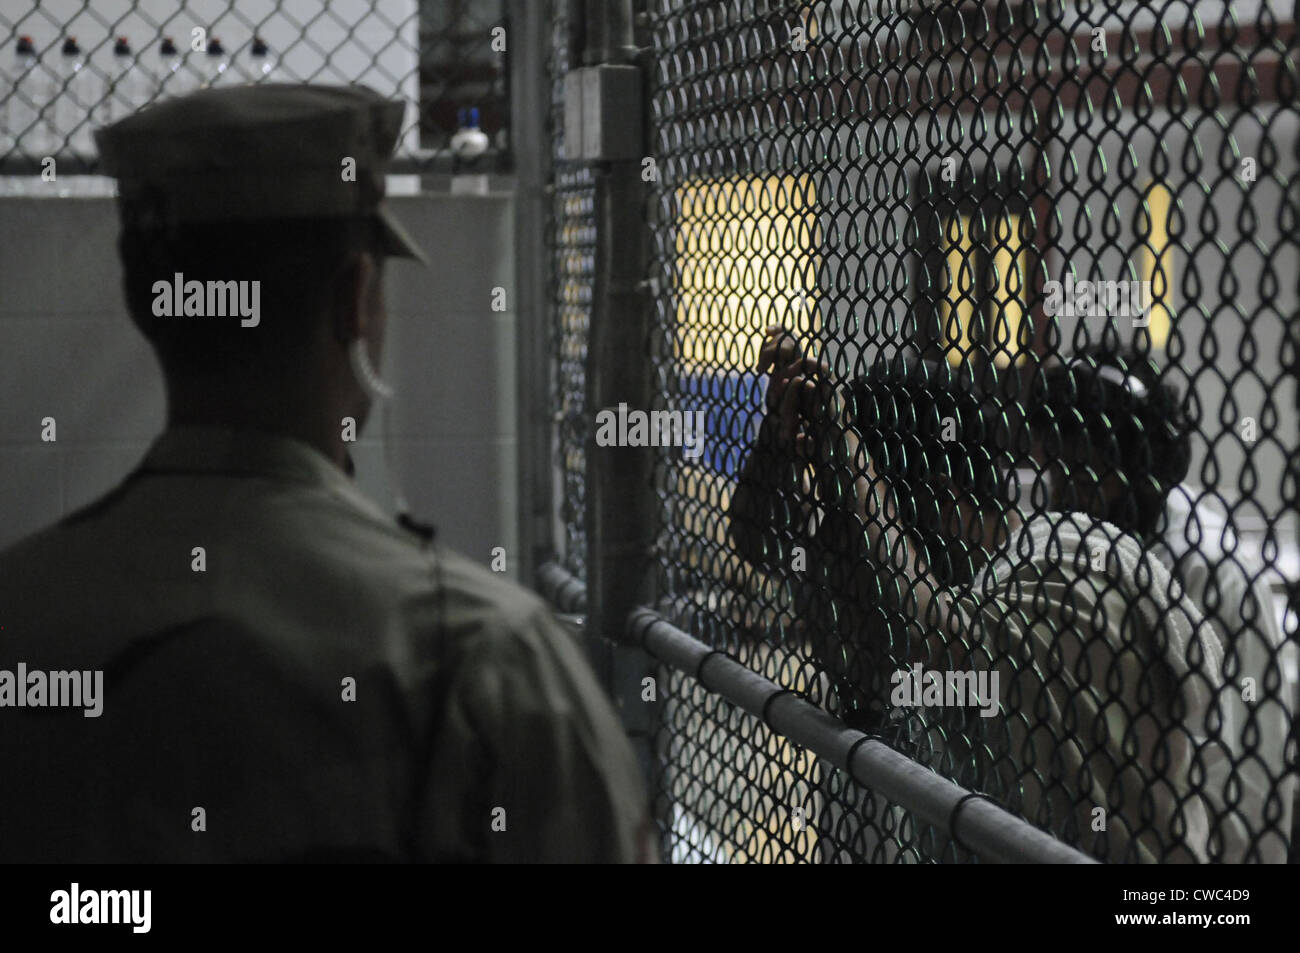 US-Seemann steht Uhr über einen Zellenblock am US Naval Station Guantanamo Bay Militärgefängnis während Häftlinge durchsehen Stockfoto